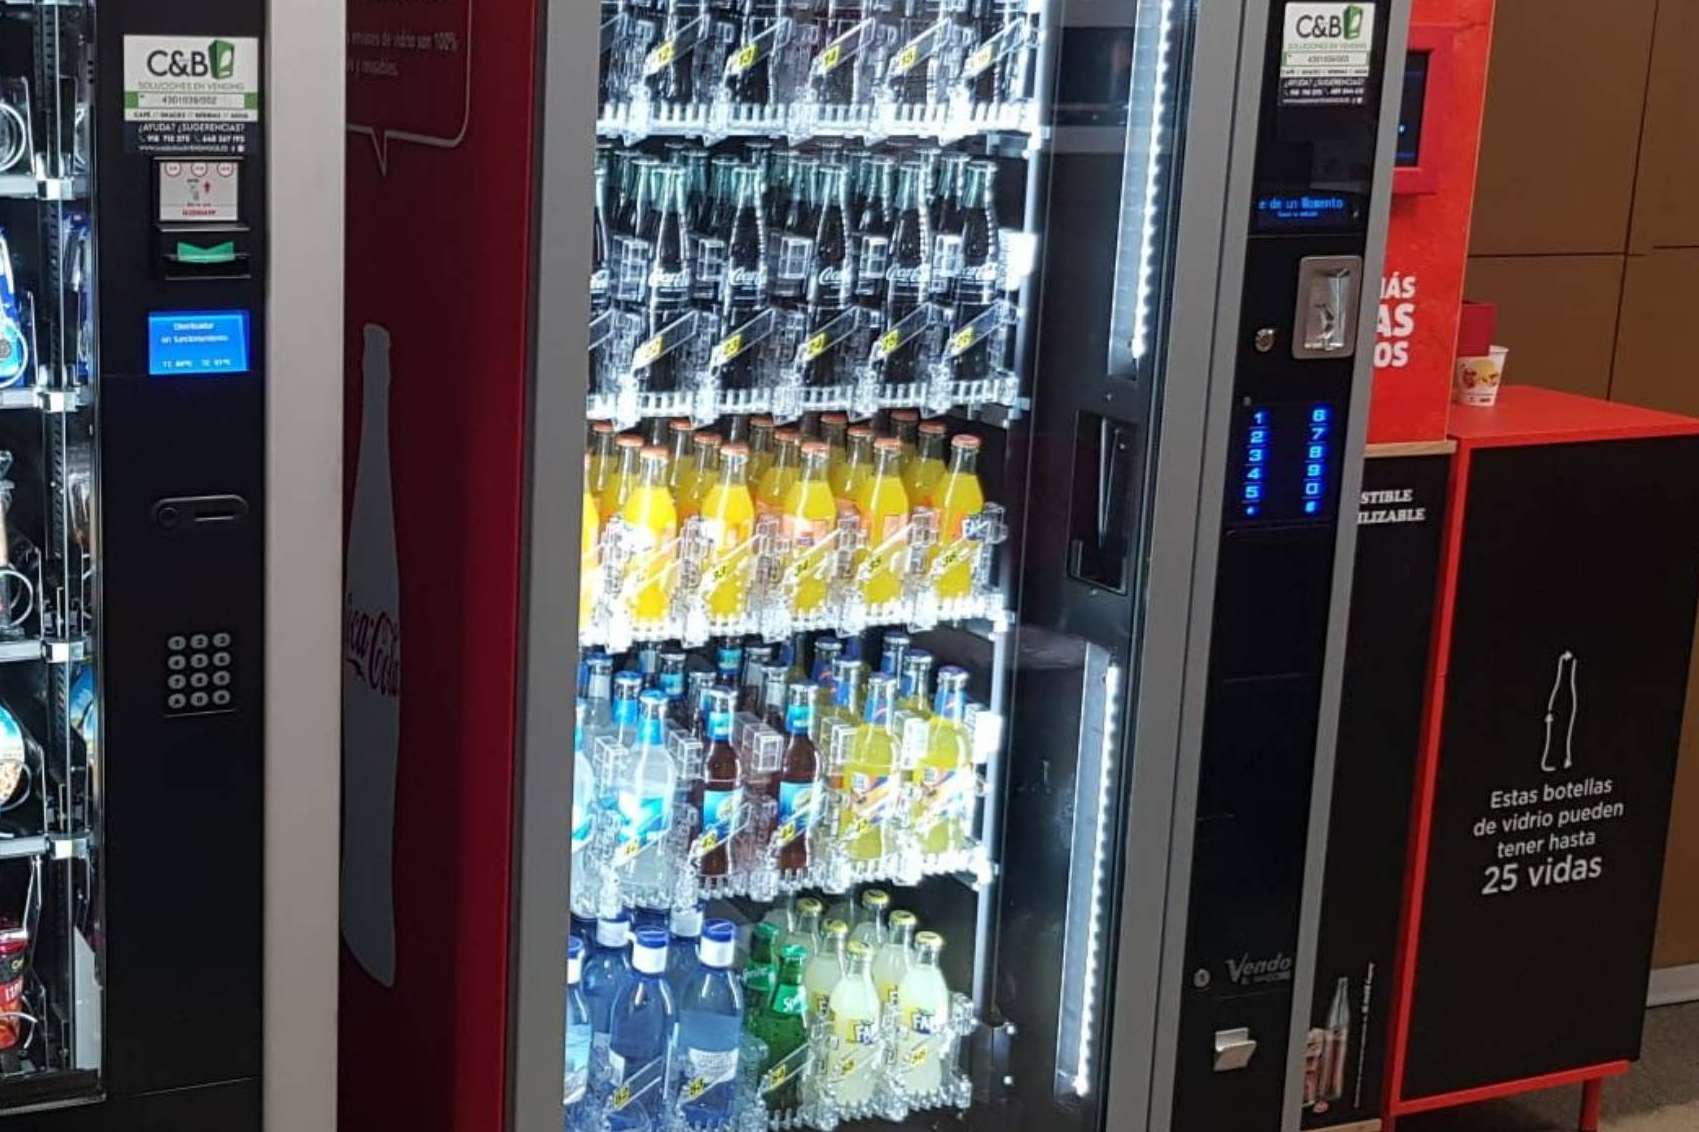 Máquinas vending sostenibles para revolucionar el sector, de la mano de C&B Señor